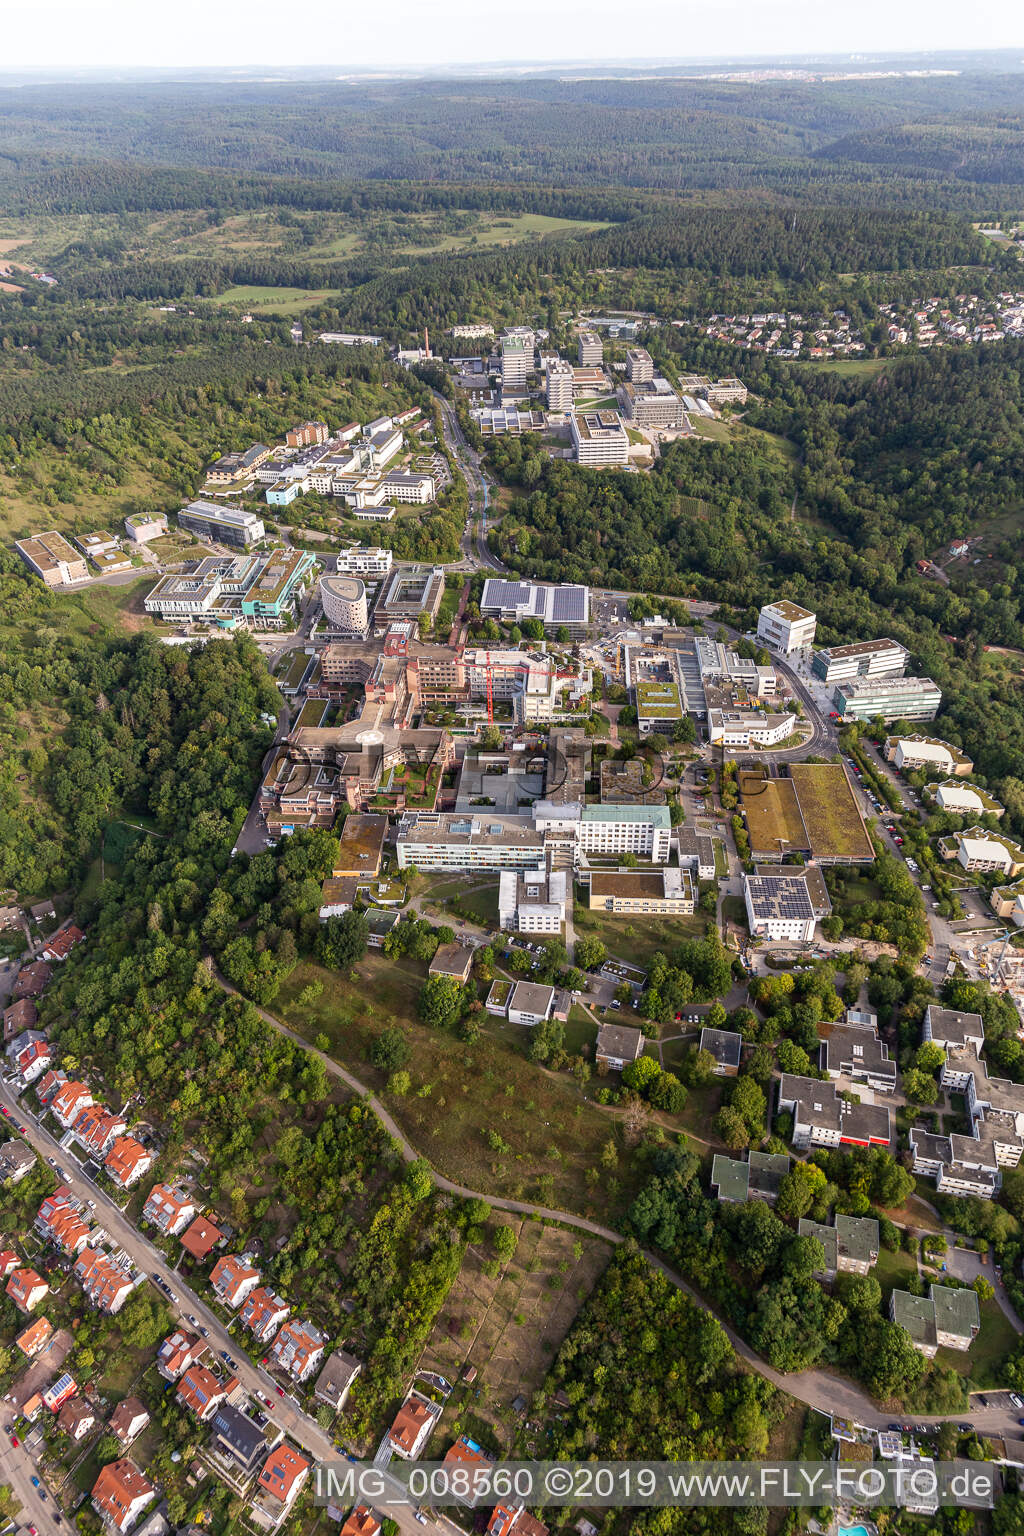 BG Klinik, Universität und Universitätsklinikum Tübingen im Bundesland Baden-Württemberg, Deutschland aus der Drohnenperspektive